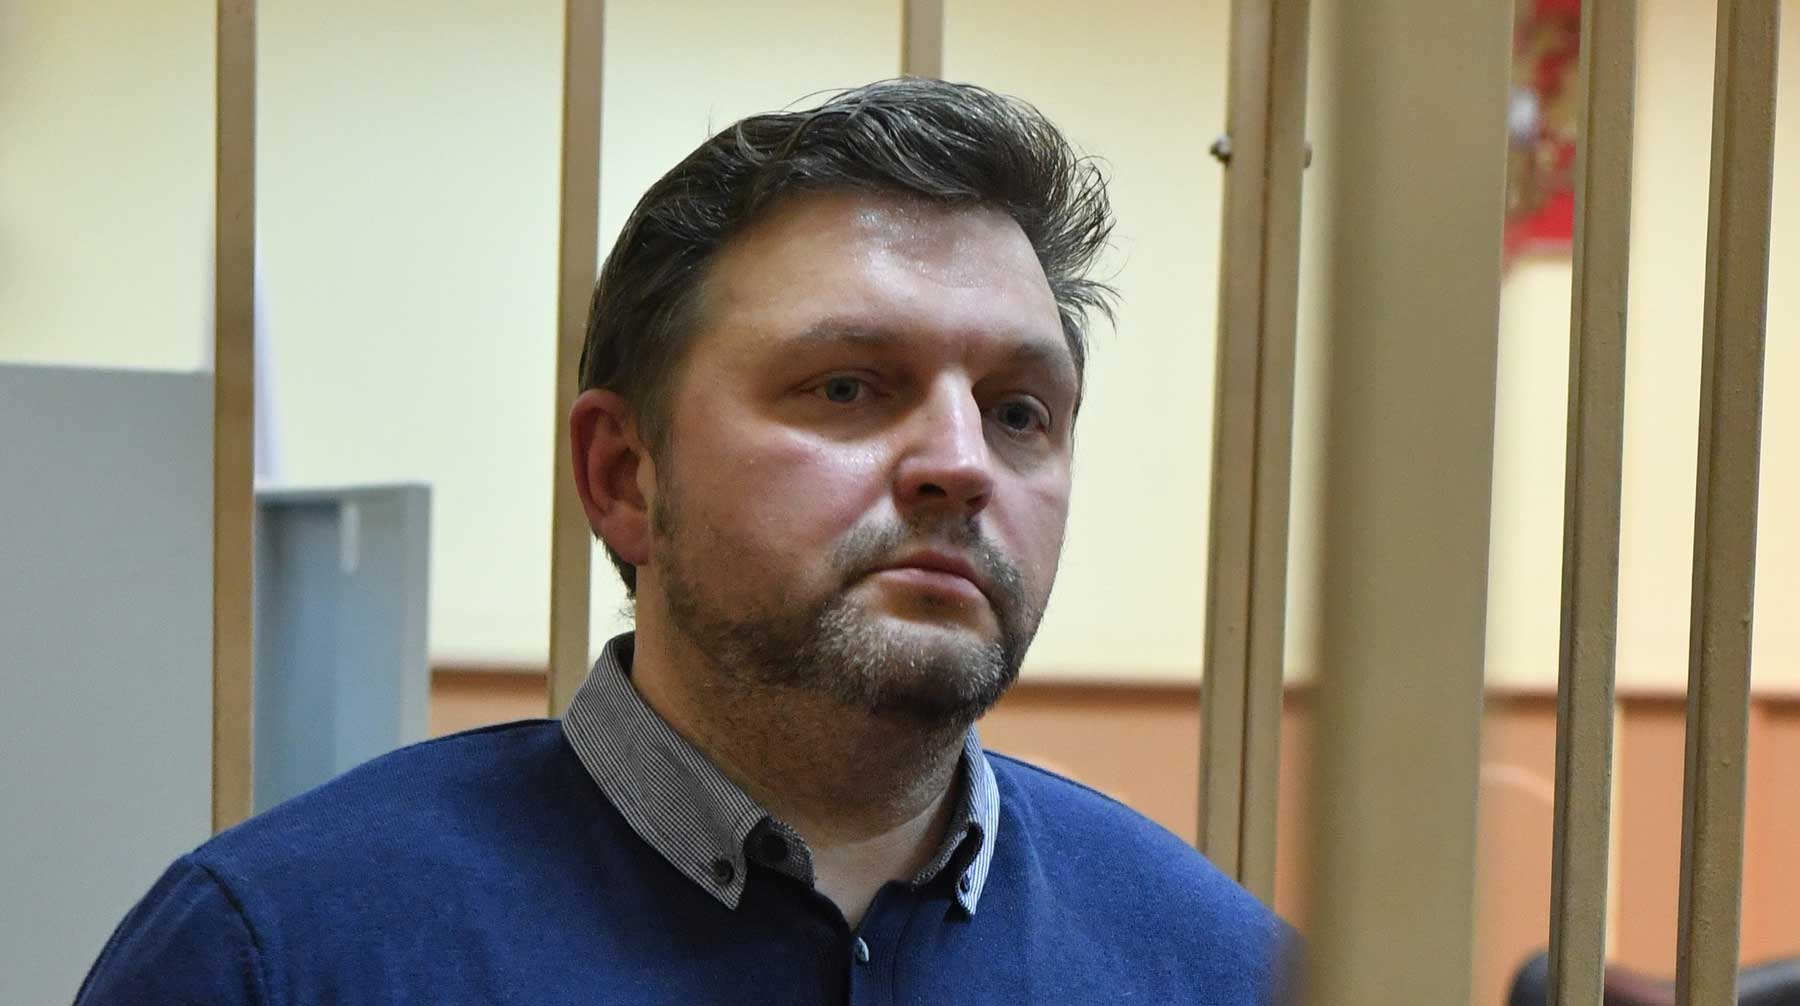 Бывший губернатор Кировской области осужден на восемь лет колонии по делу о получении взятки Никита Белых